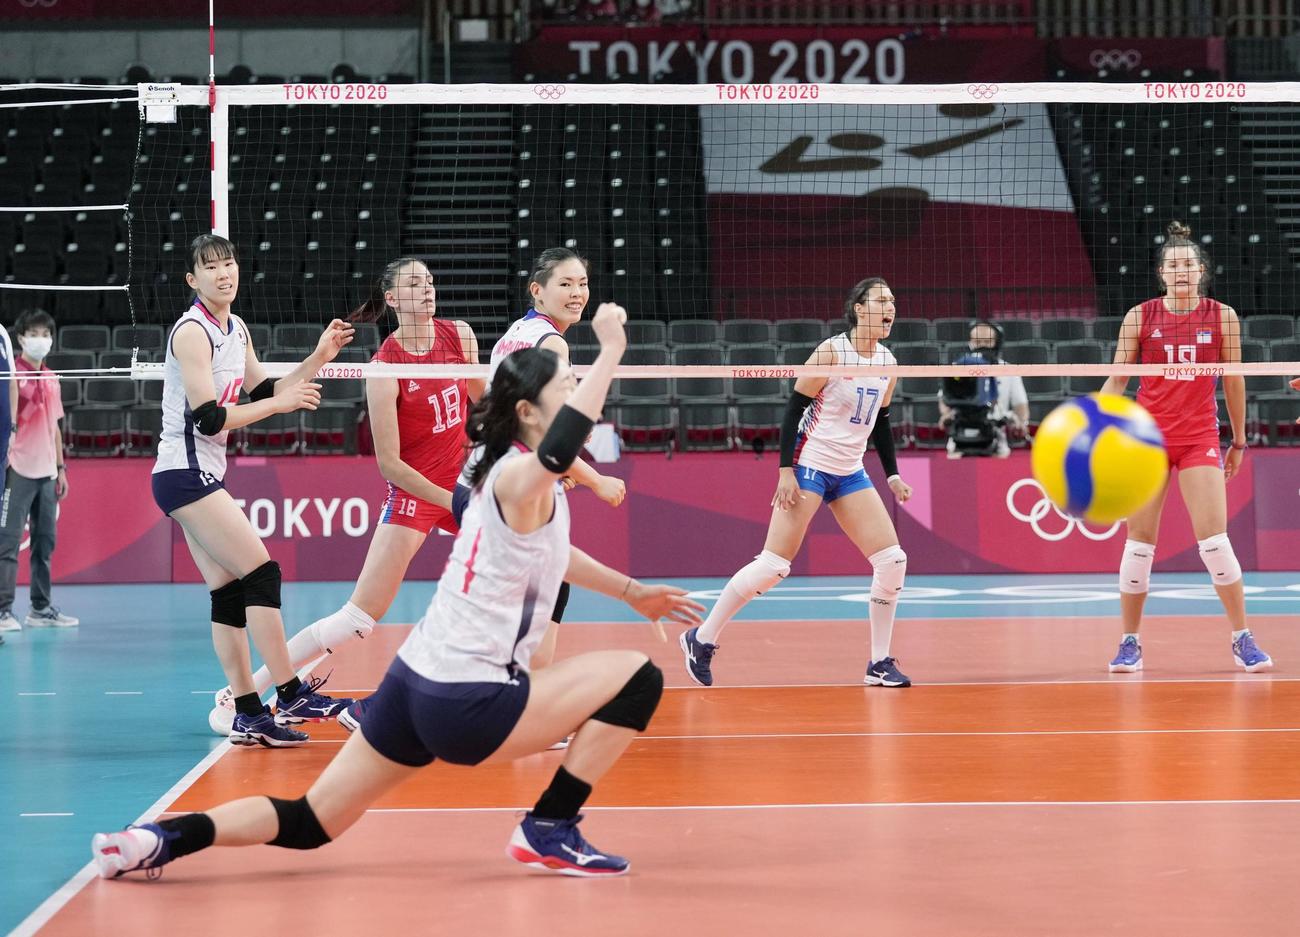 2020年東京オリンピックのセルビア選手団